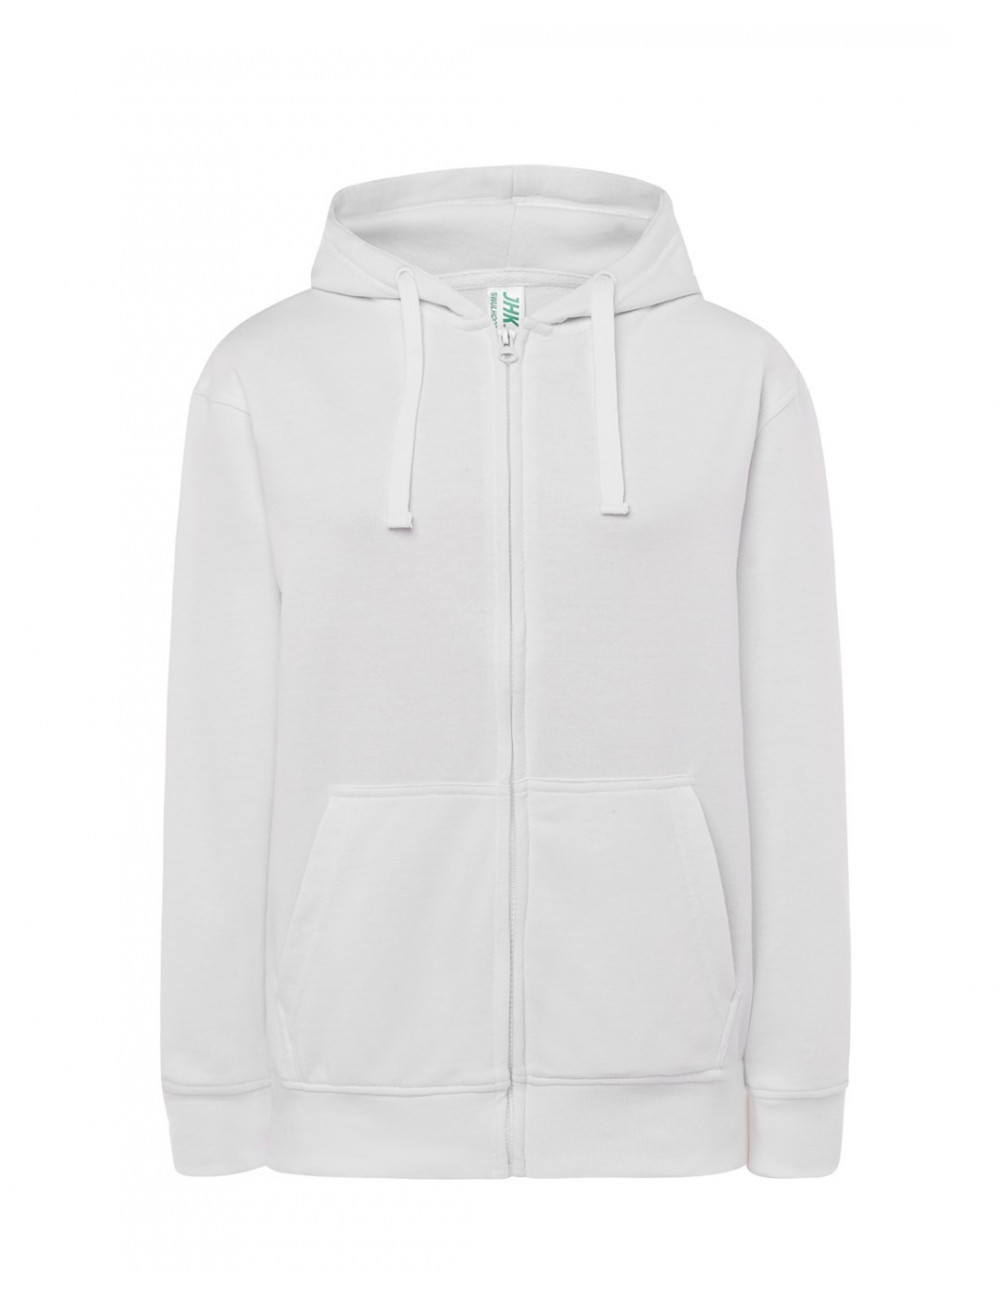 Women`s sweatshirt swul hood full zip wh white Jhk